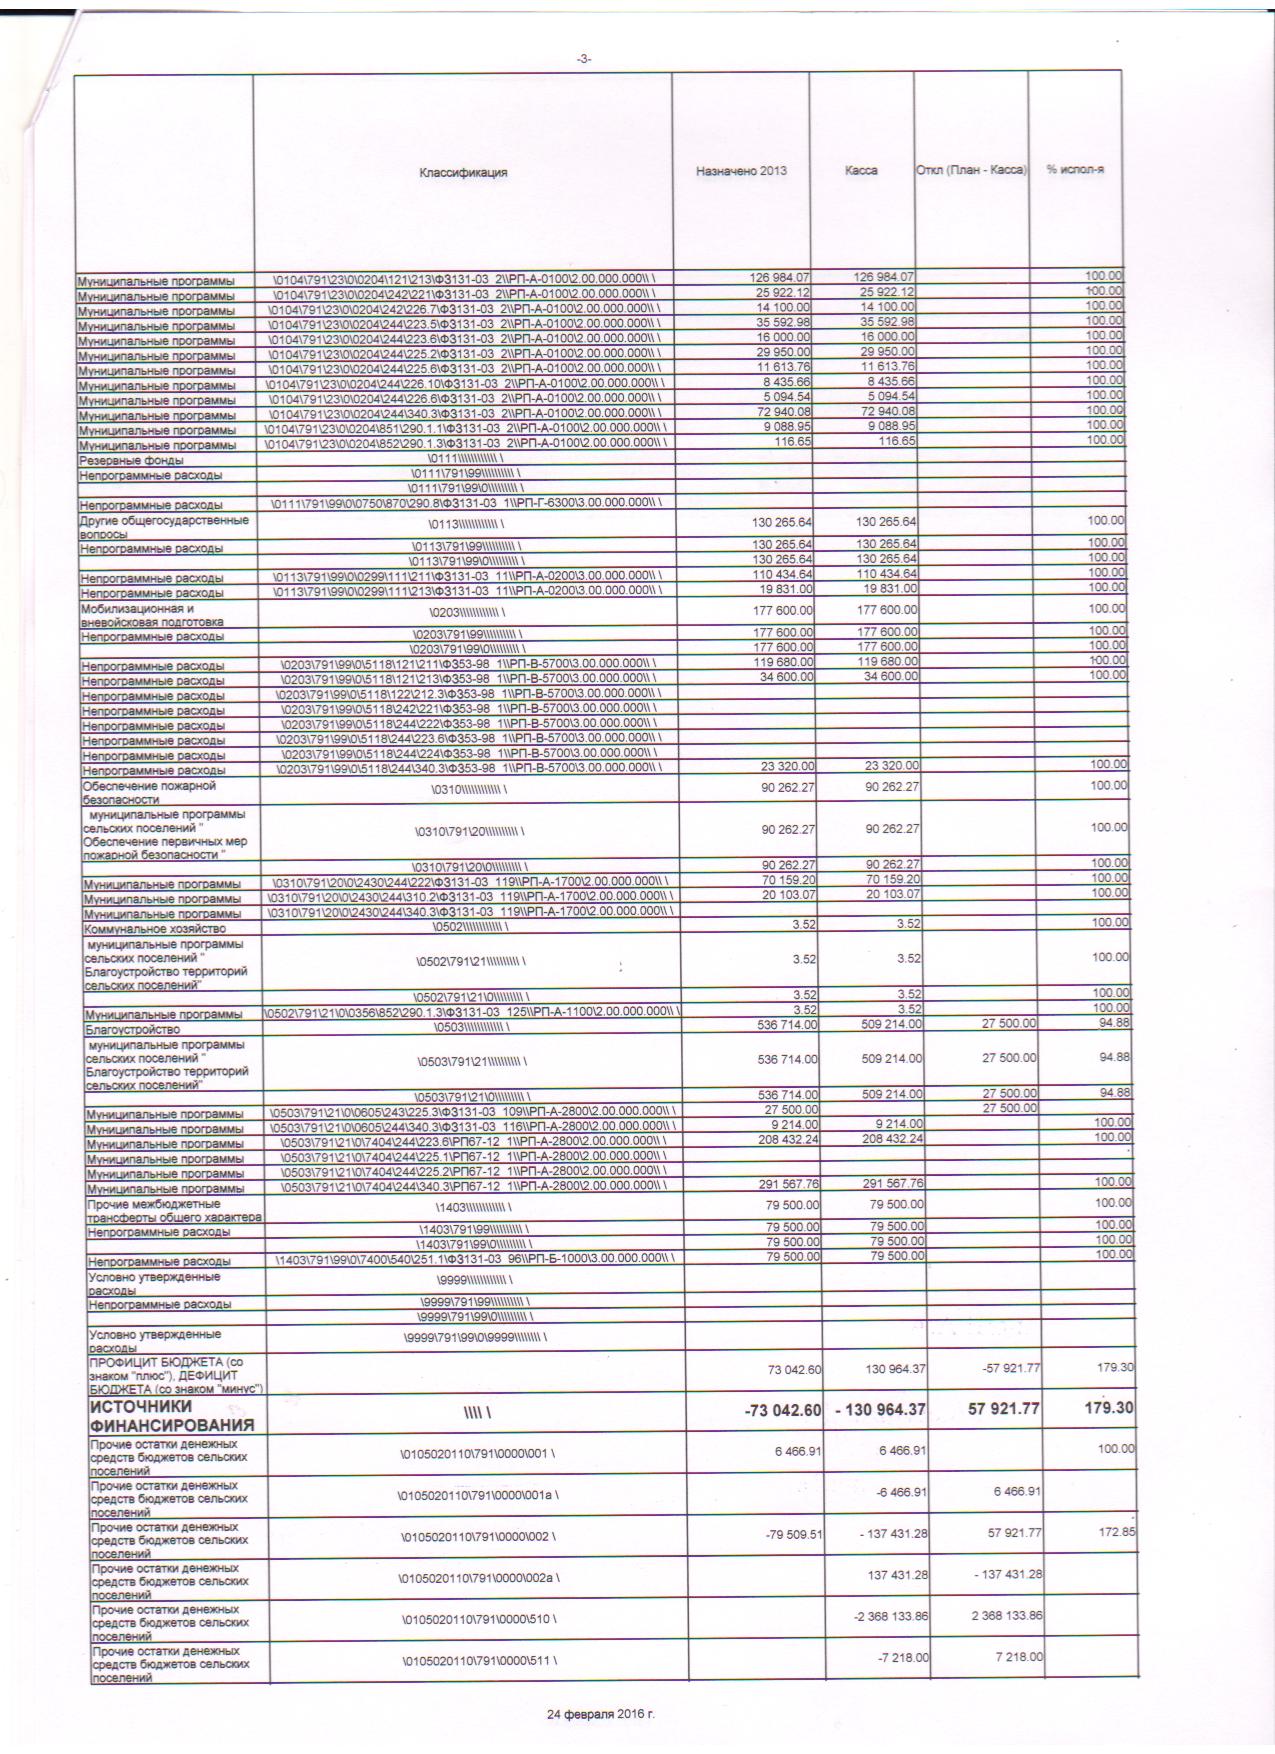 месячный отчет об исполнении бюджета на 01.01.2016г. 002